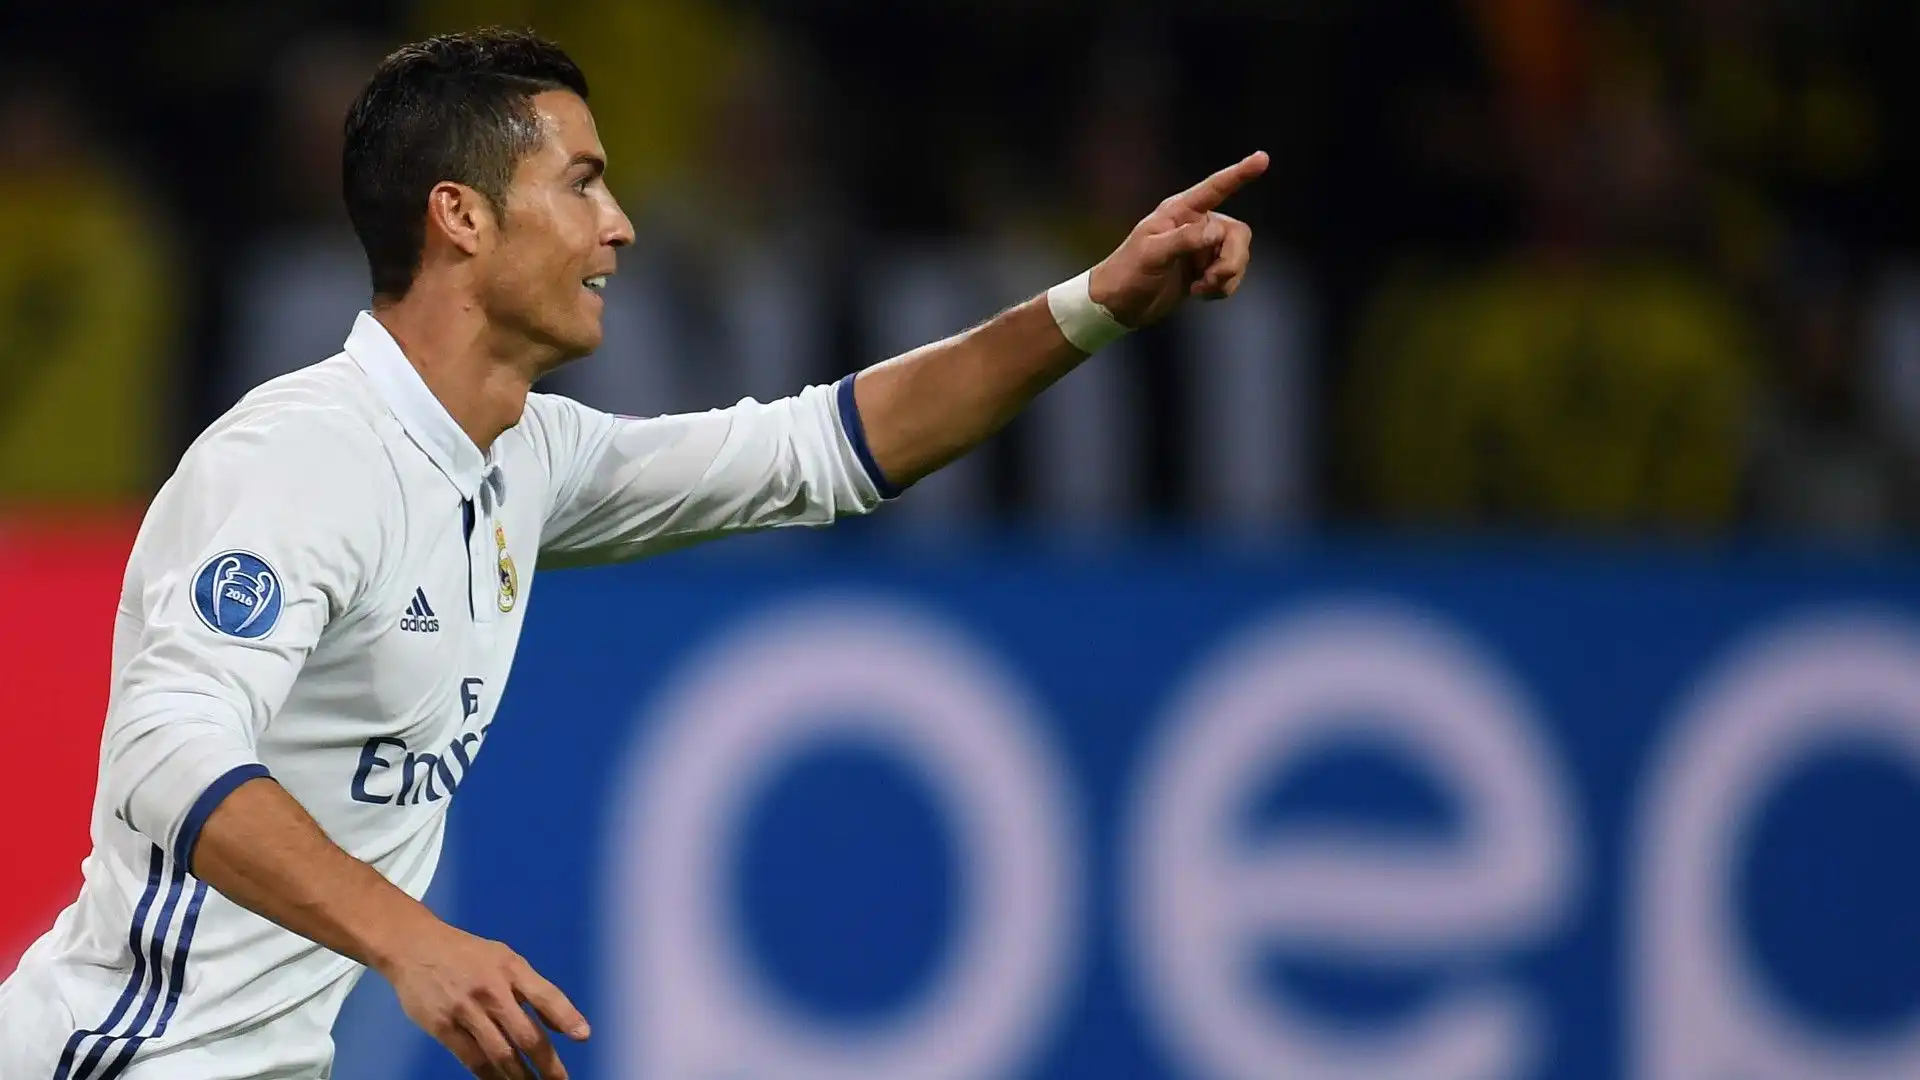 2016/17 Cristiano Ronaldo (Real Madrid) 12 gol in 13 presenze